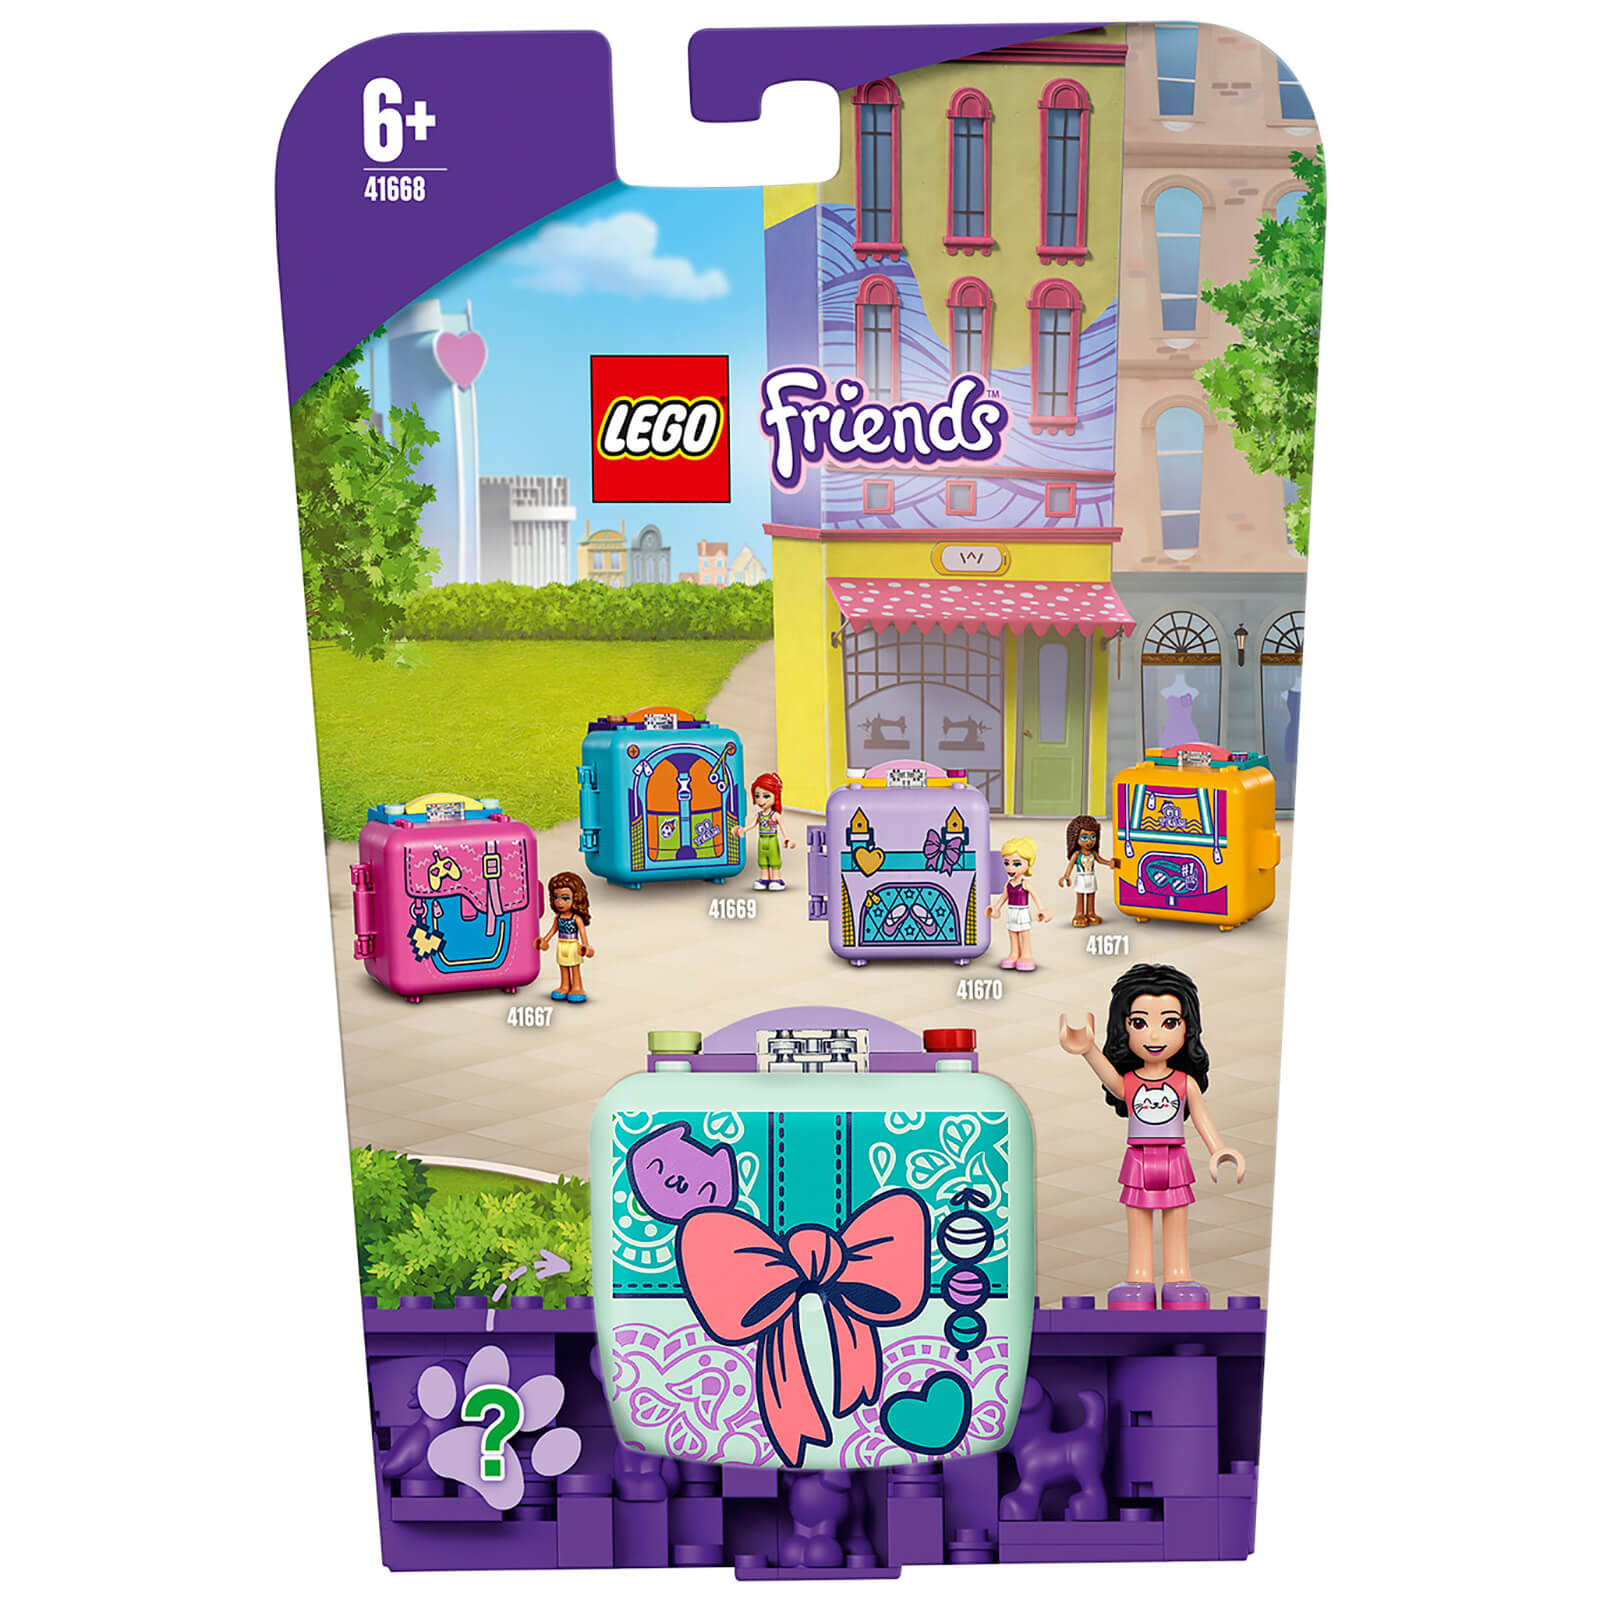 LEGO Friends Emmas Fashion Cube Toy (41668)